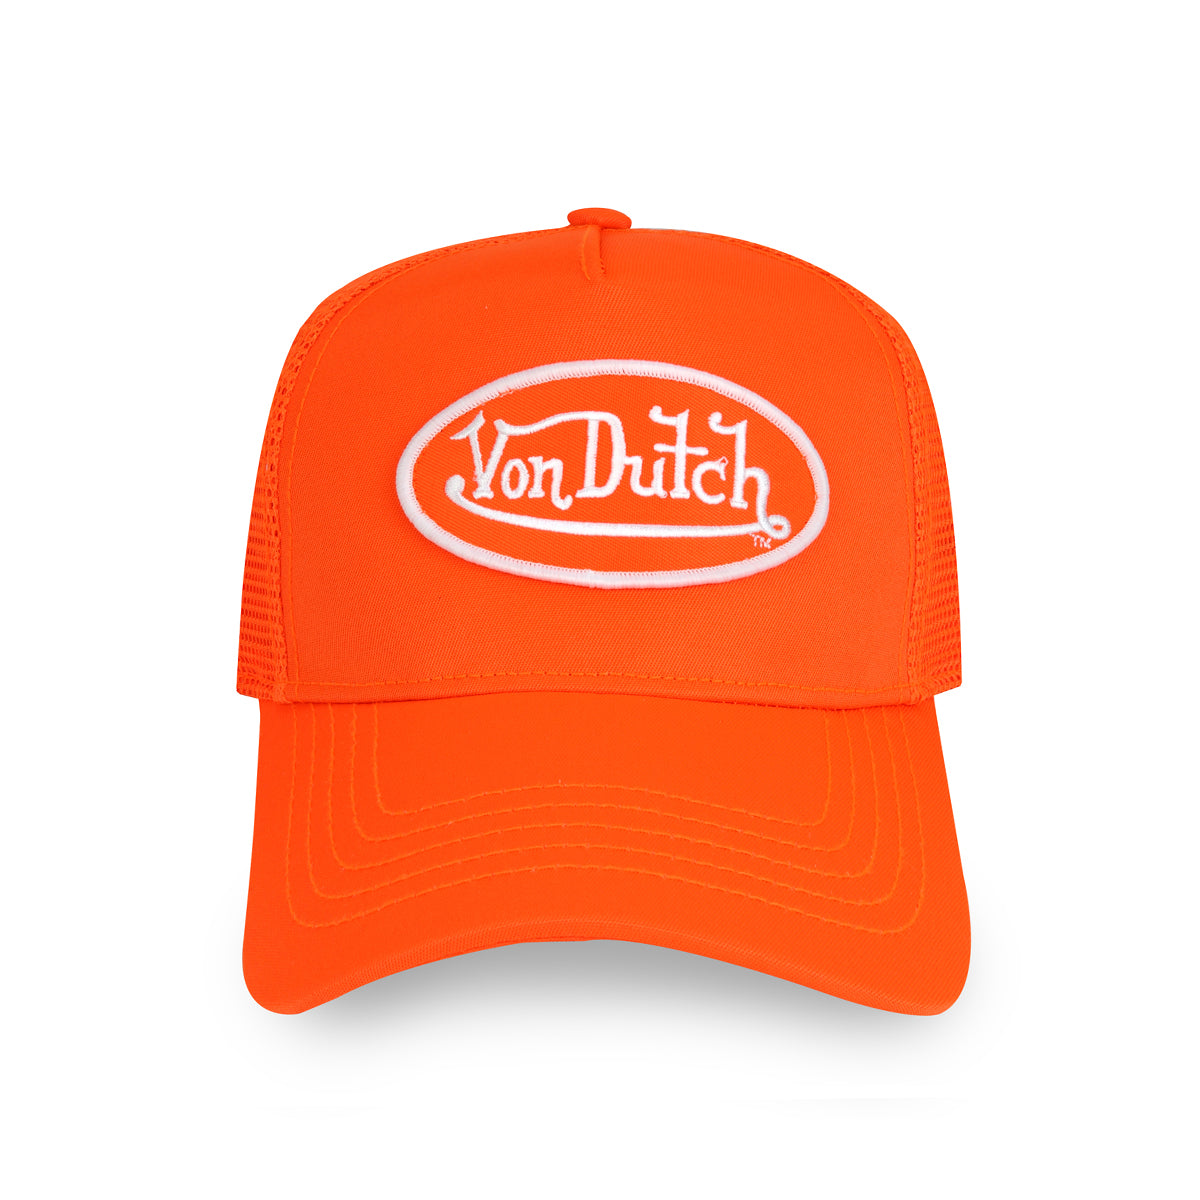 Neon Orange Trucker - Von Dutch